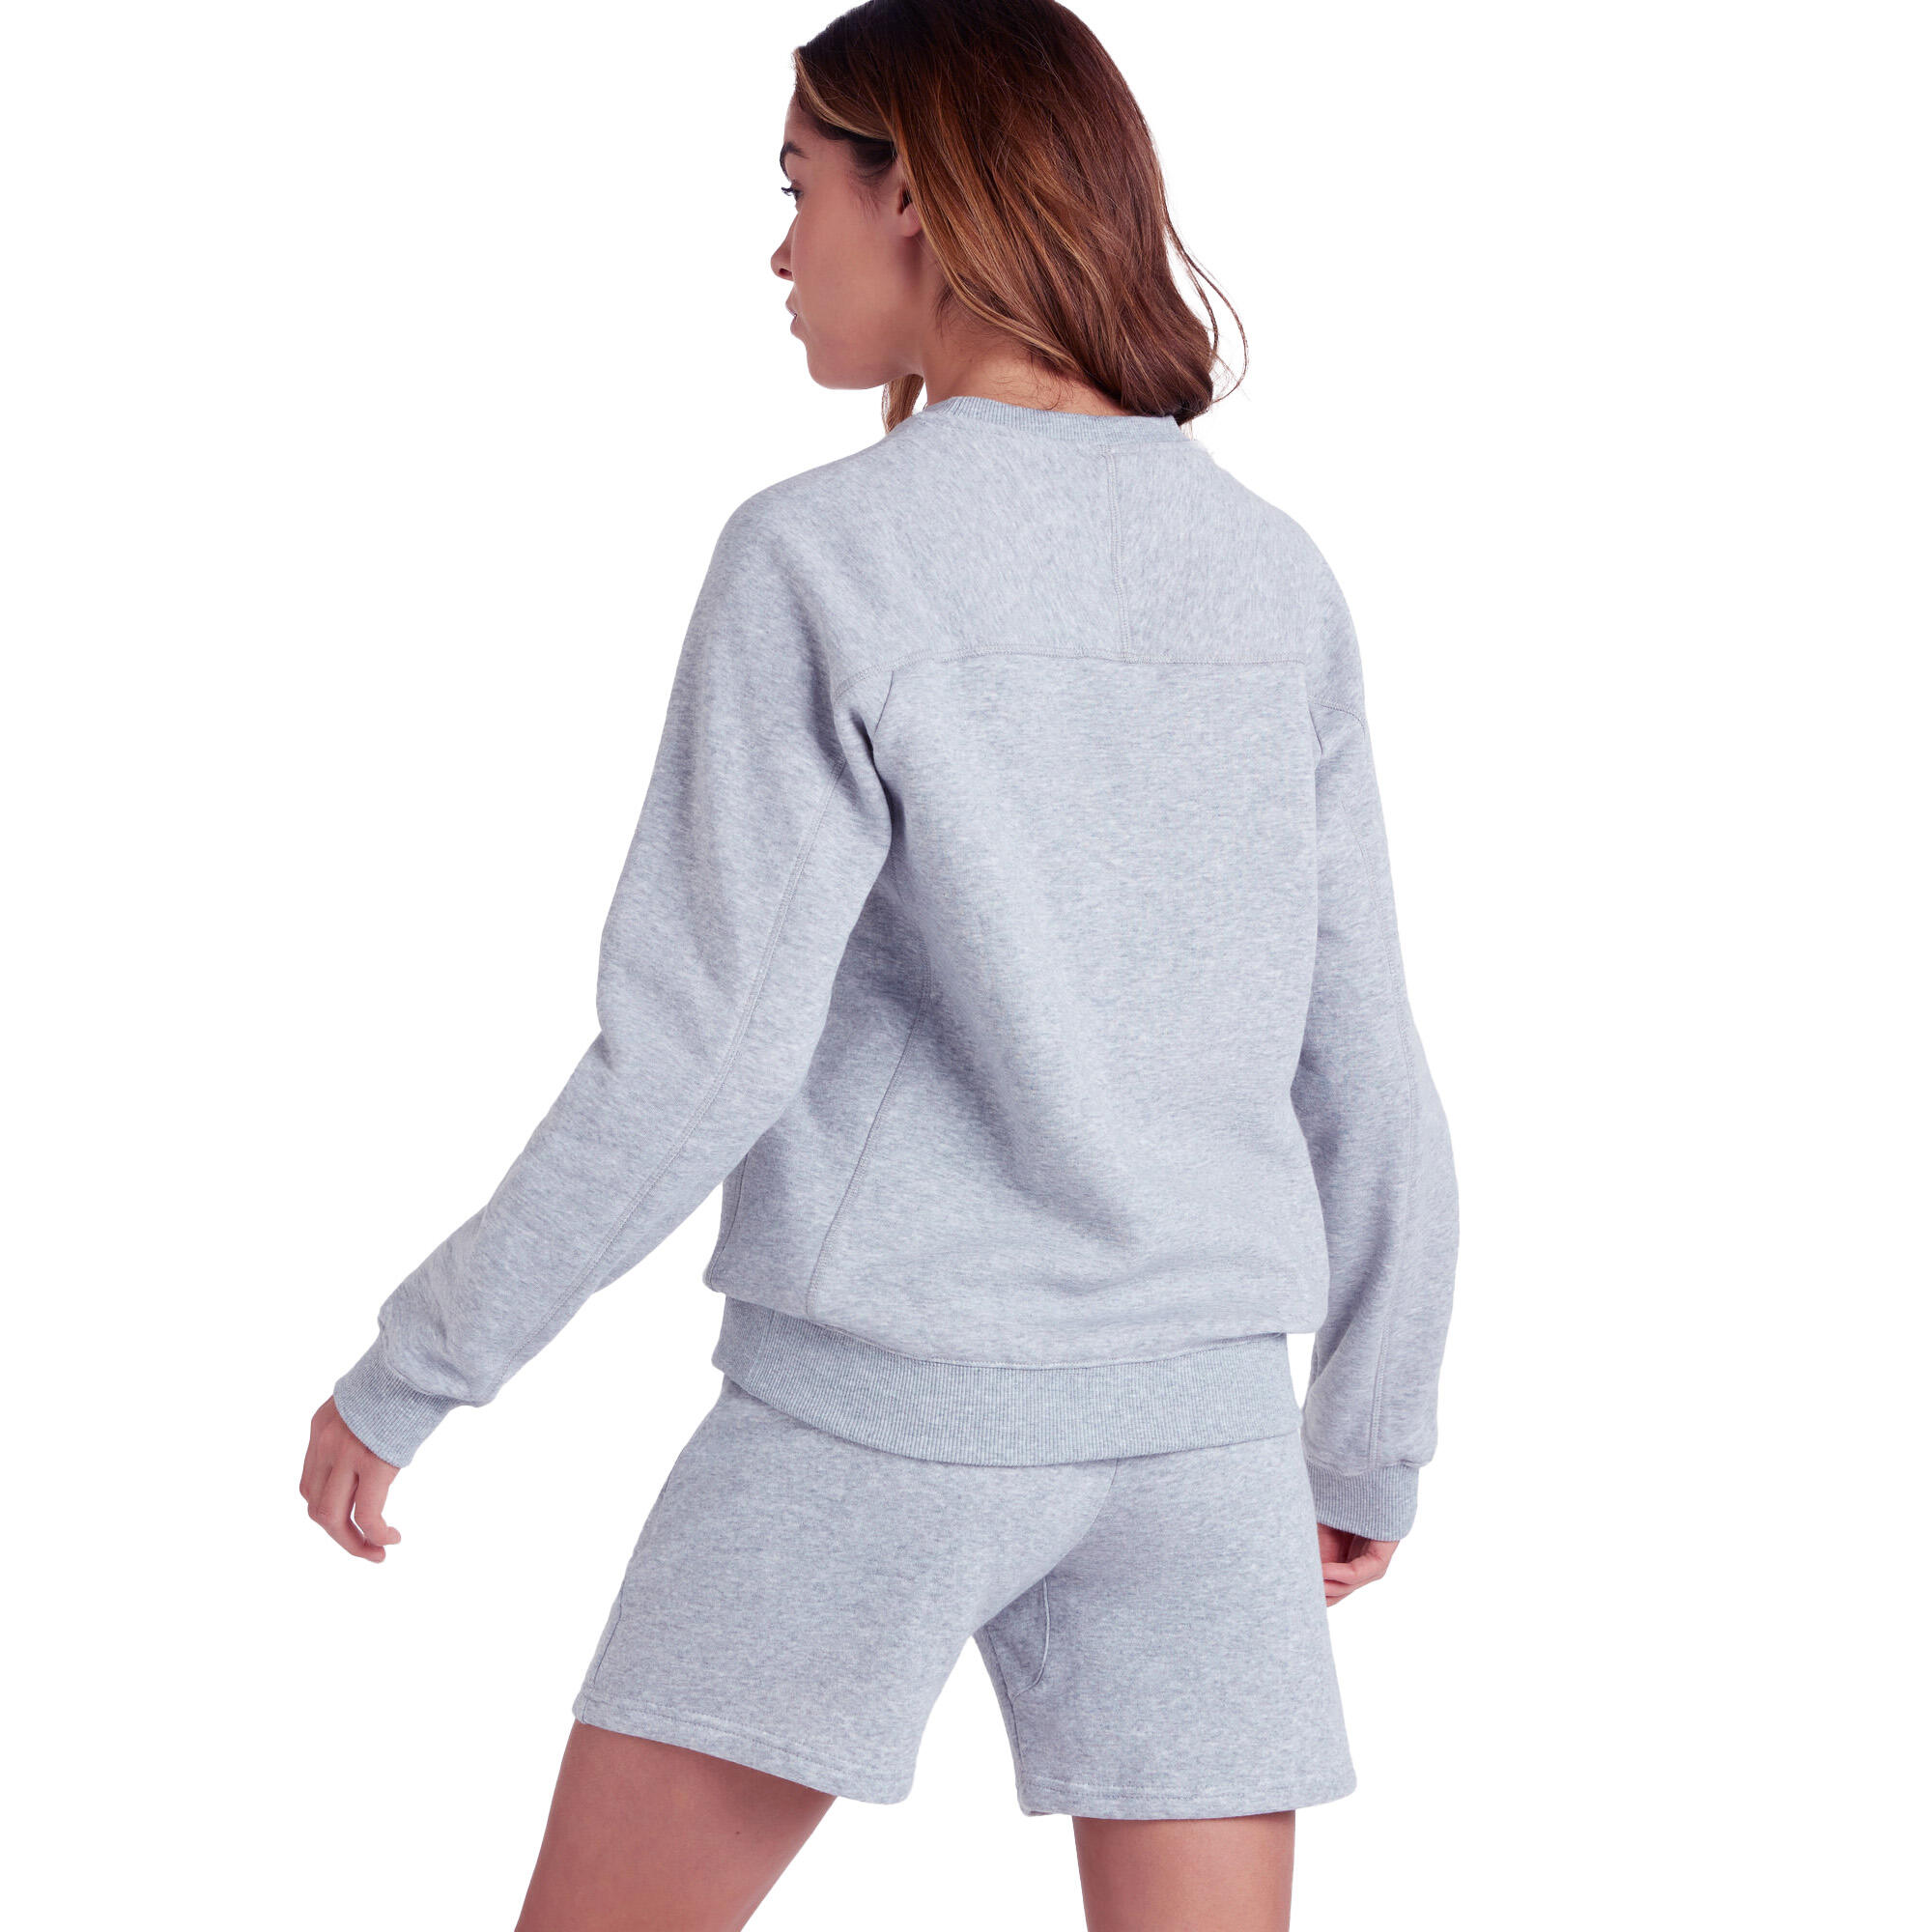 Womens/Ladies Club Leisure Sweatshirt (Grey Marl/White) 2/3